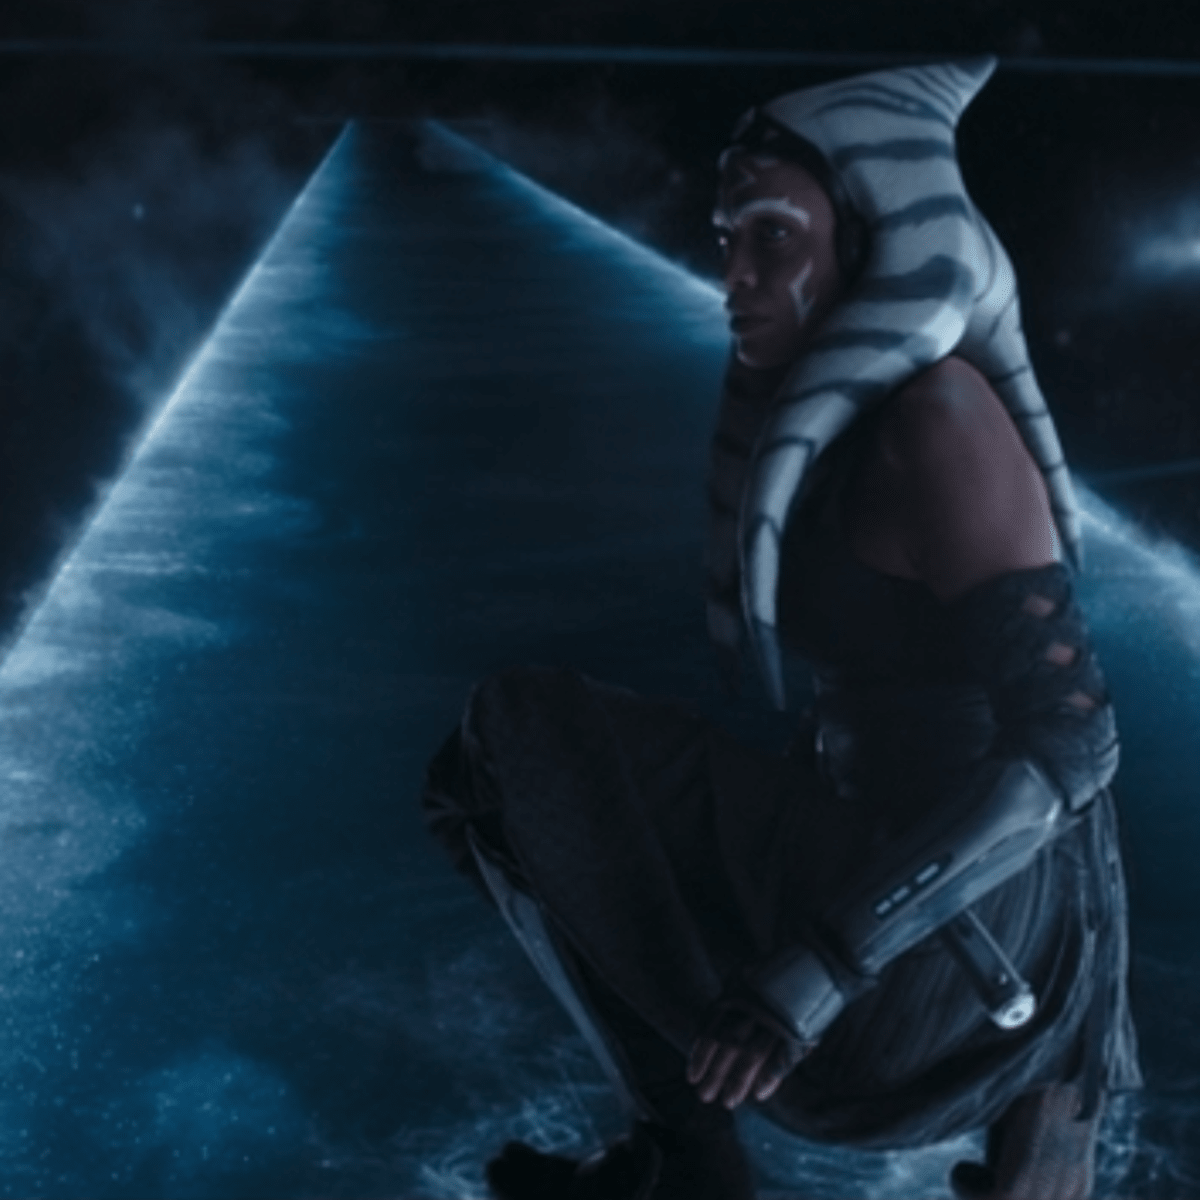 Ahsoka Episode 5 features Anakin Skywalker lightsaber fight